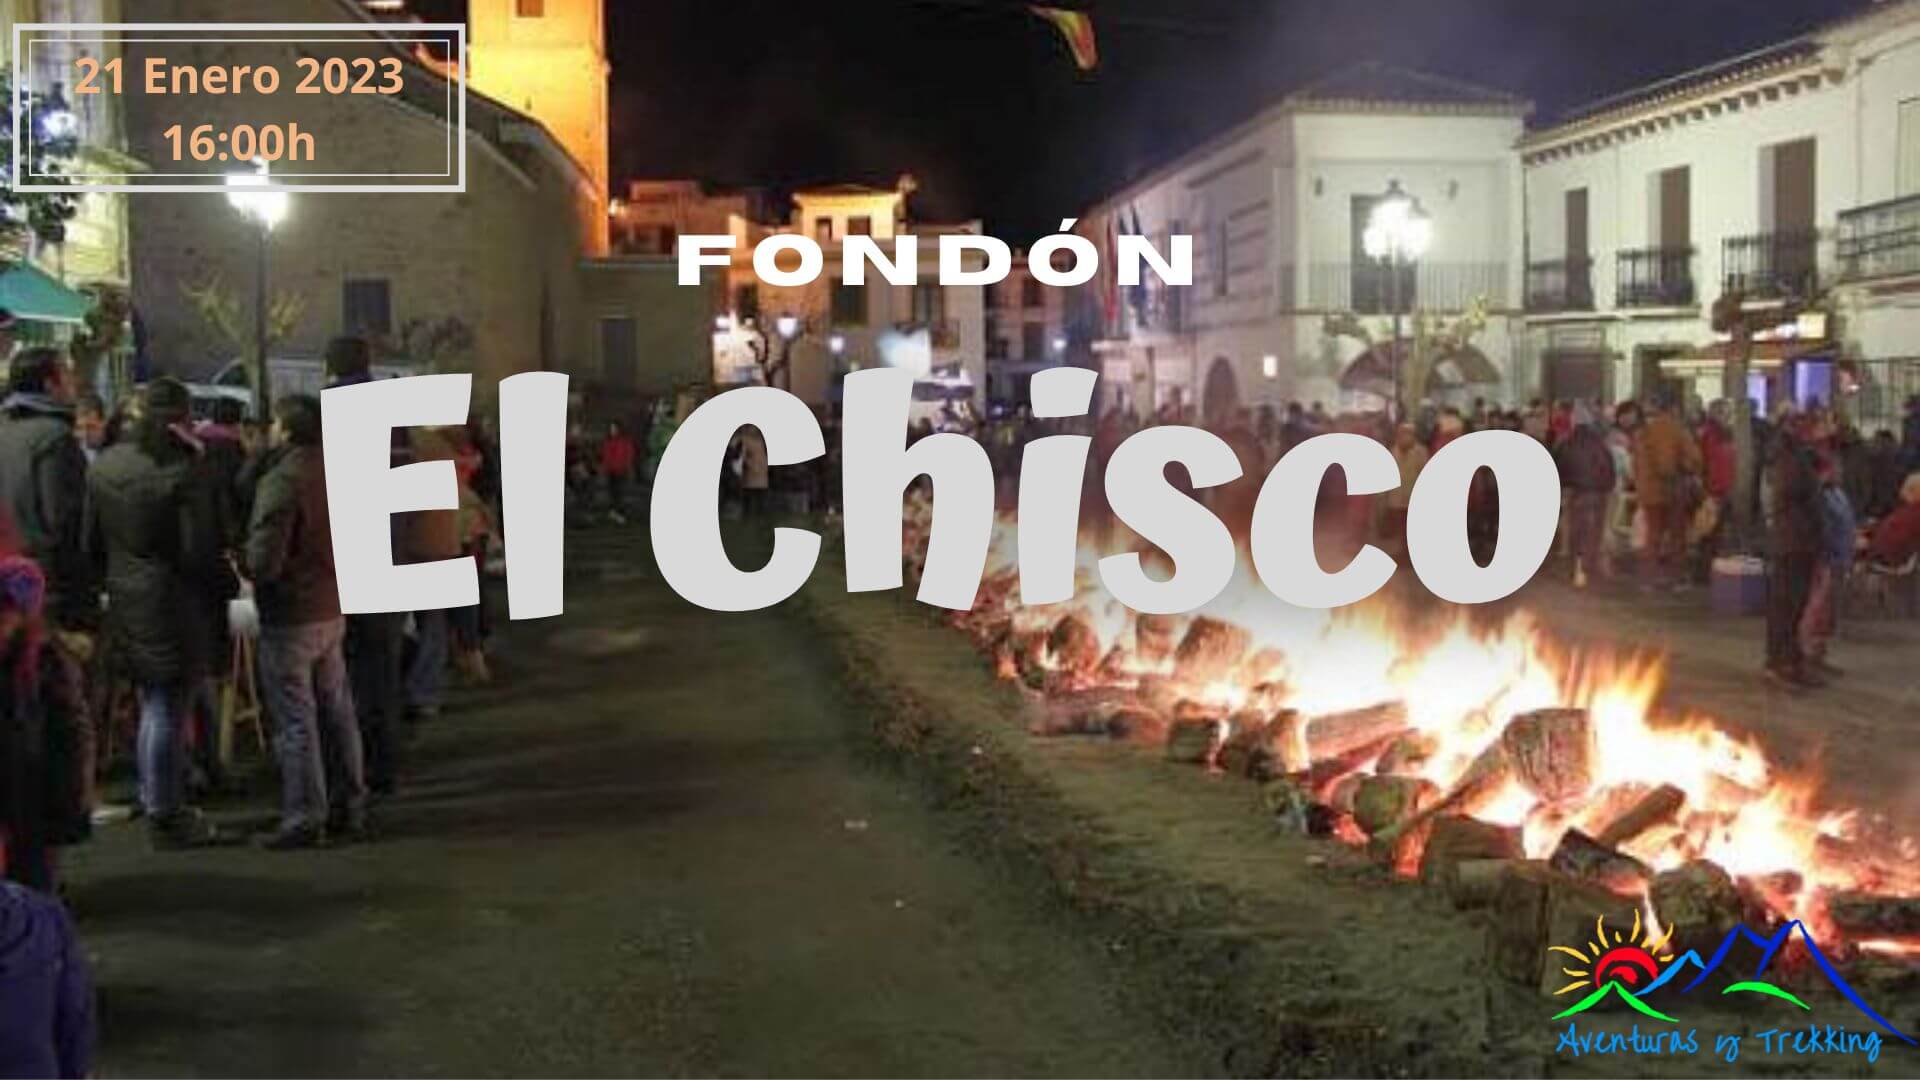 El Chisco de Fondón